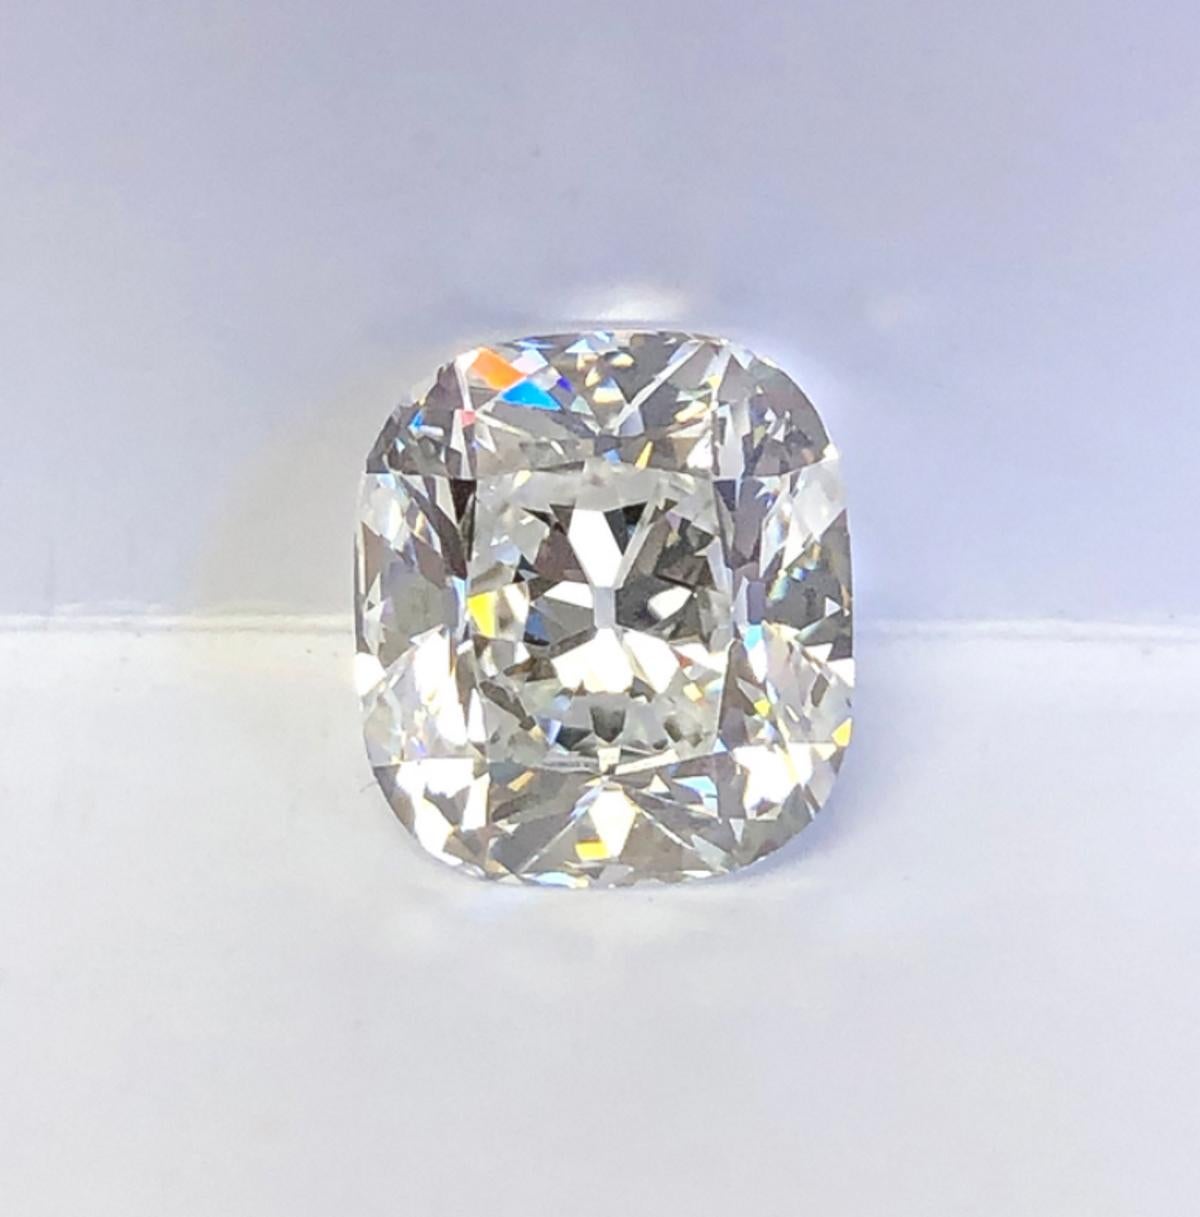 Cette magnifique bague met en valeur un remarquable diamant old miner de 2,01 ct, une gemme qui rayonne d'allure vintage et de sophistication intemporelle. Certifié par le Gemological Institute of America (GIA), ce diamant présente un grade de